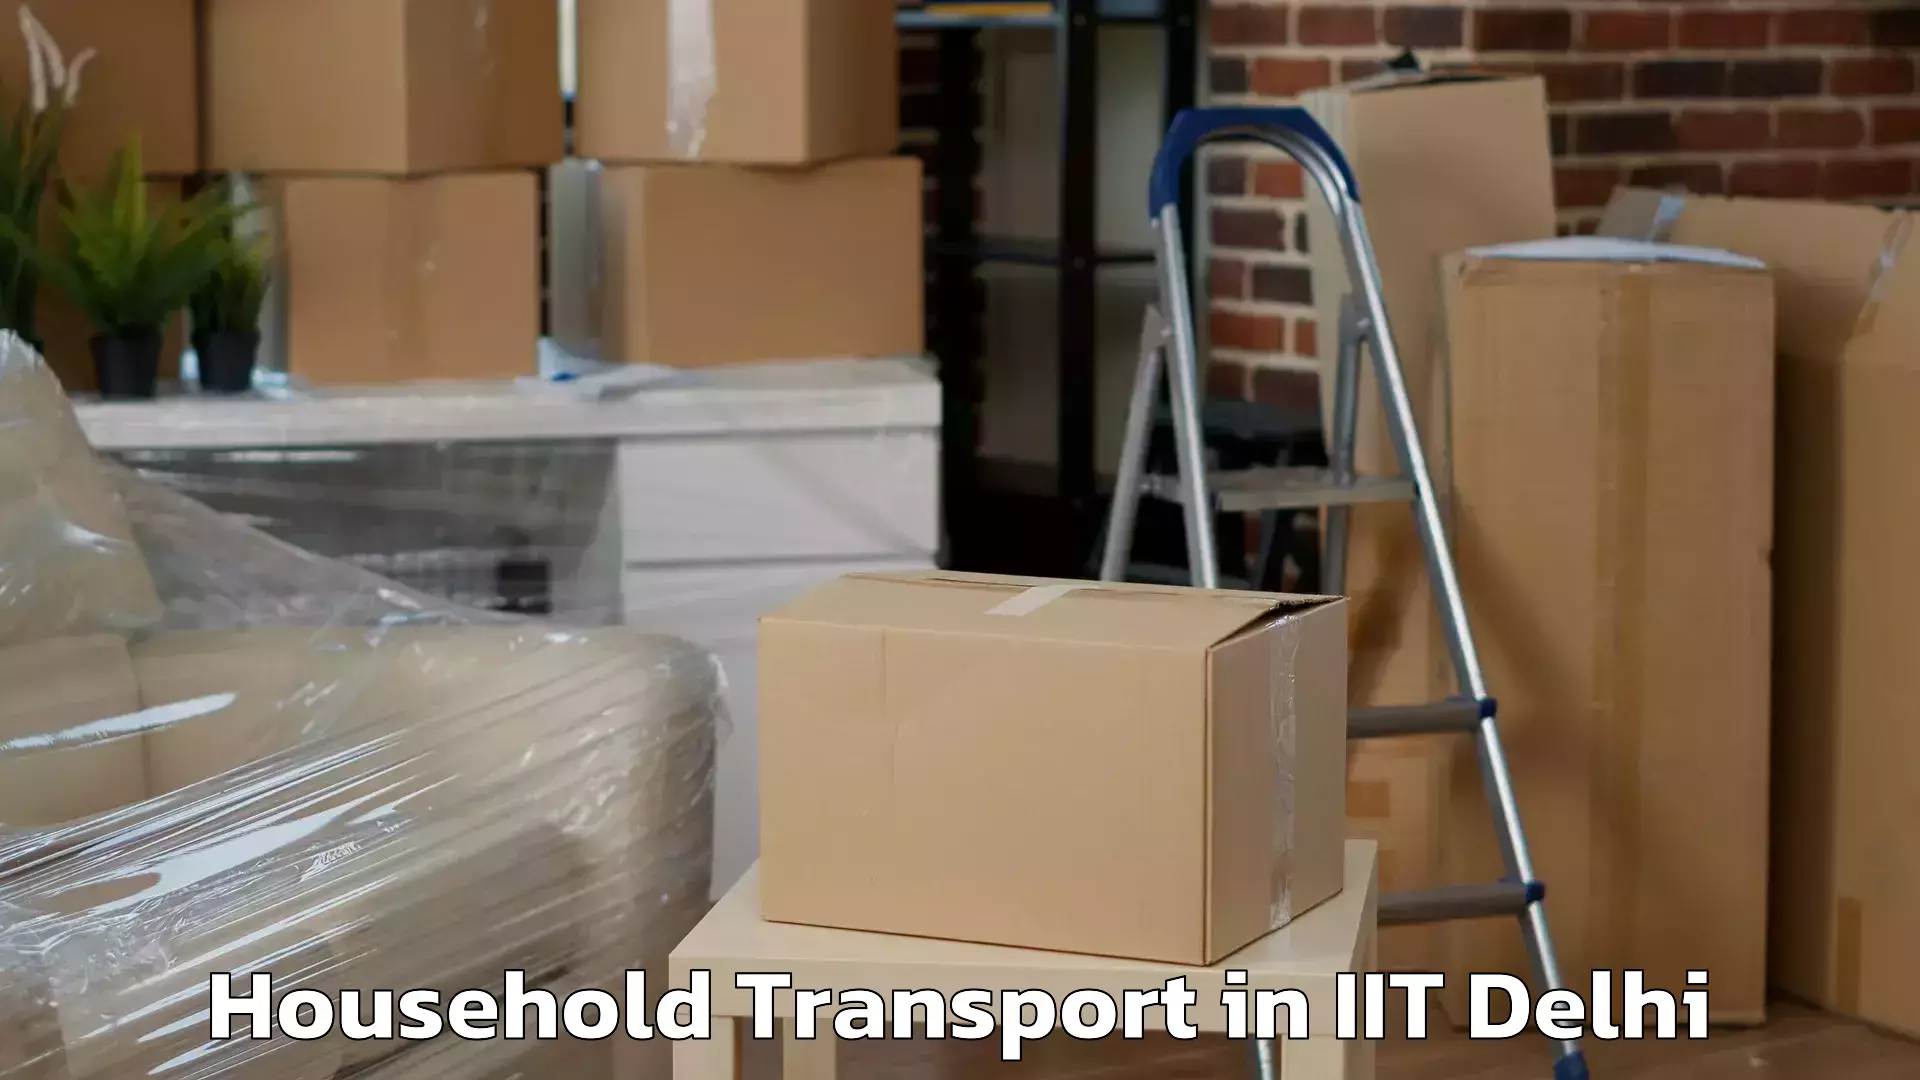 Expert furniture movers in IIT Delhi